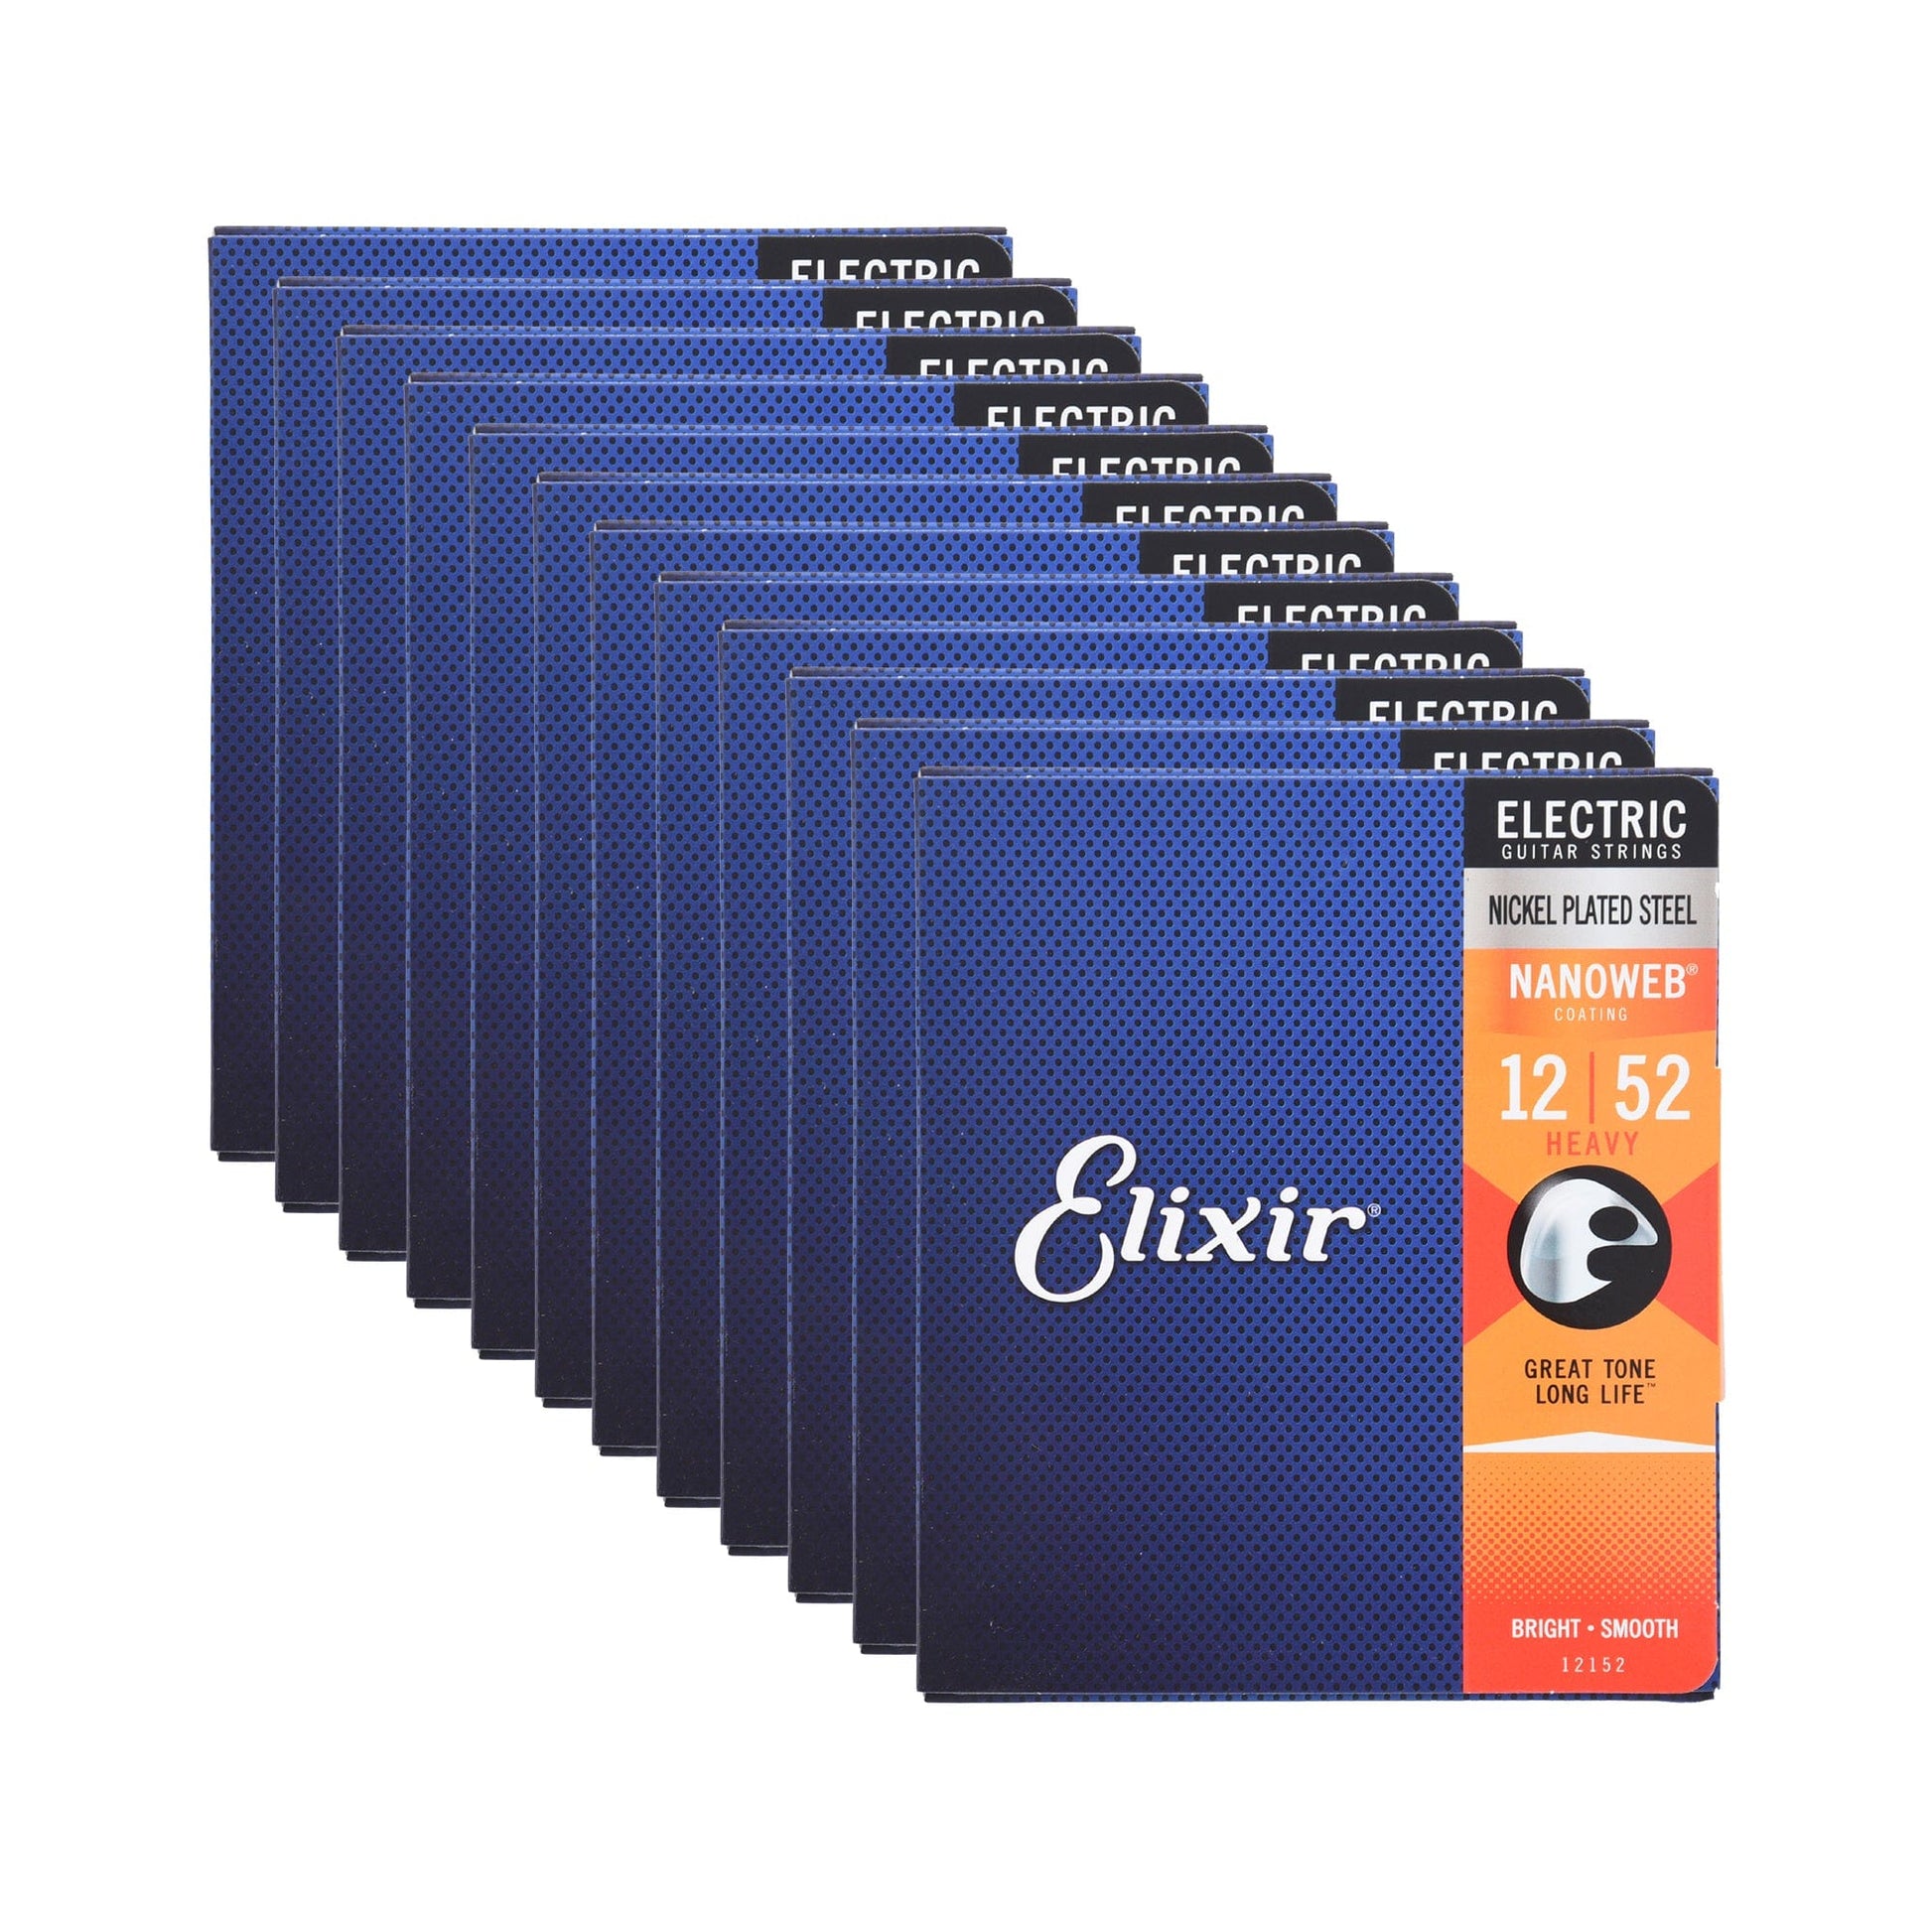 Elixir 12152 Electric Nanoweb Heavy 12-52 12 Pack Bundle Accessories / Strings / Guitar Strings